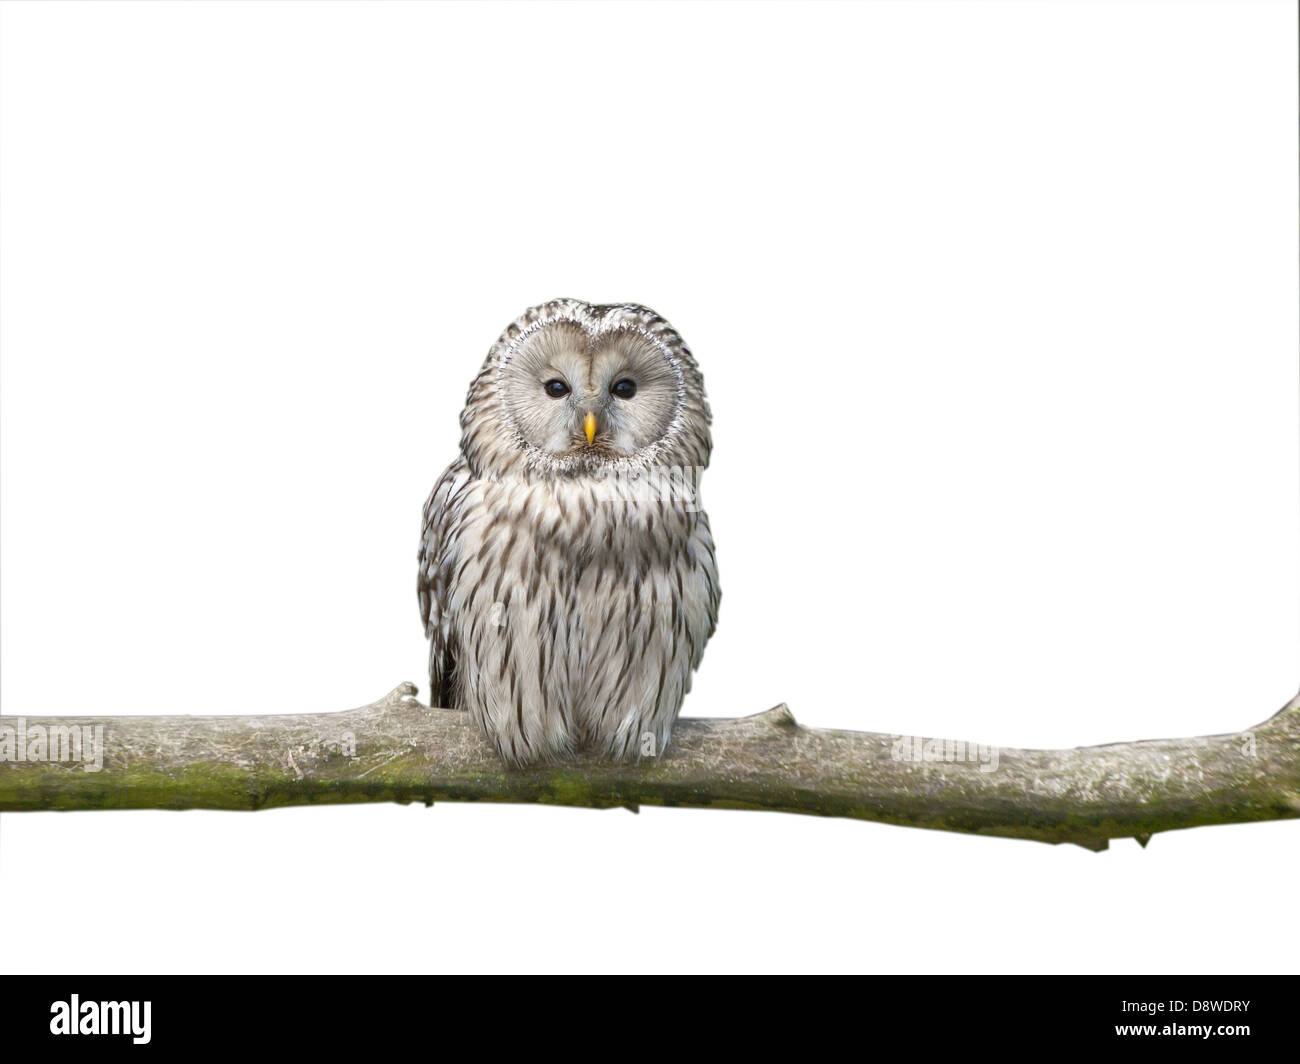 White owl on a stick Stock Photo